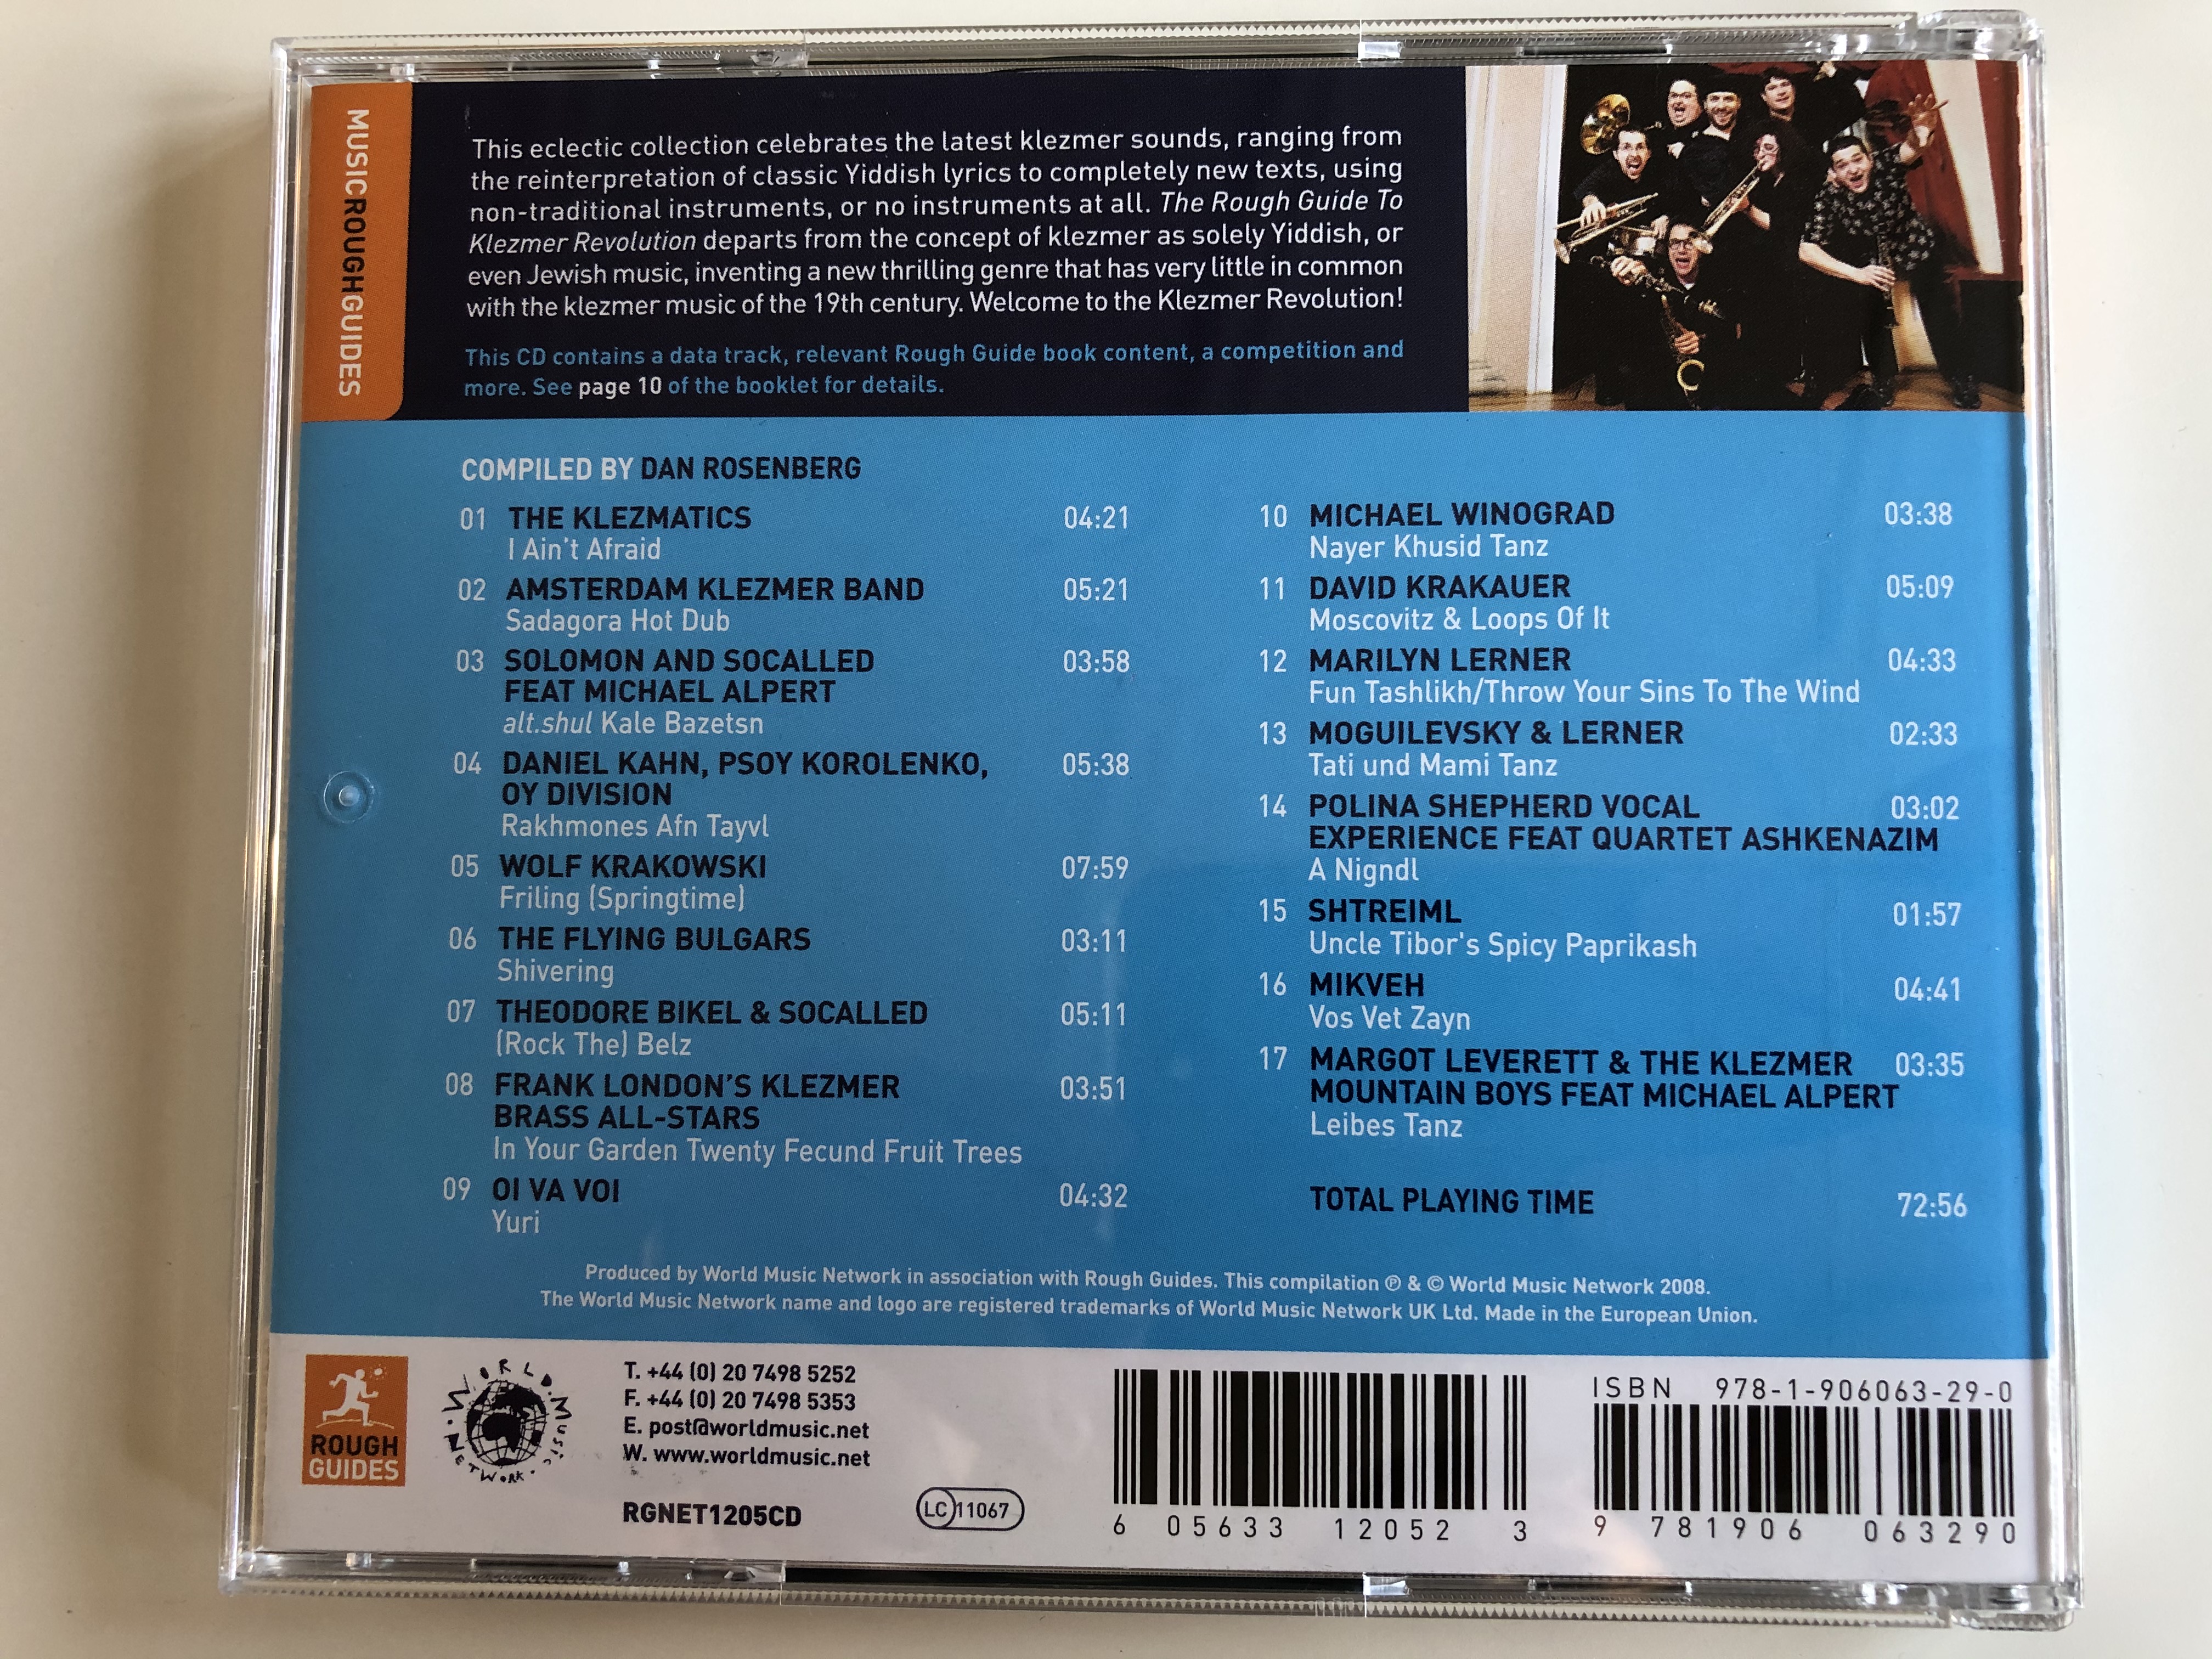 the-rough-guide-to-klezmer-revolution-world-music-network-audio-cd-2008-rgnet1205cd-9-.jpg